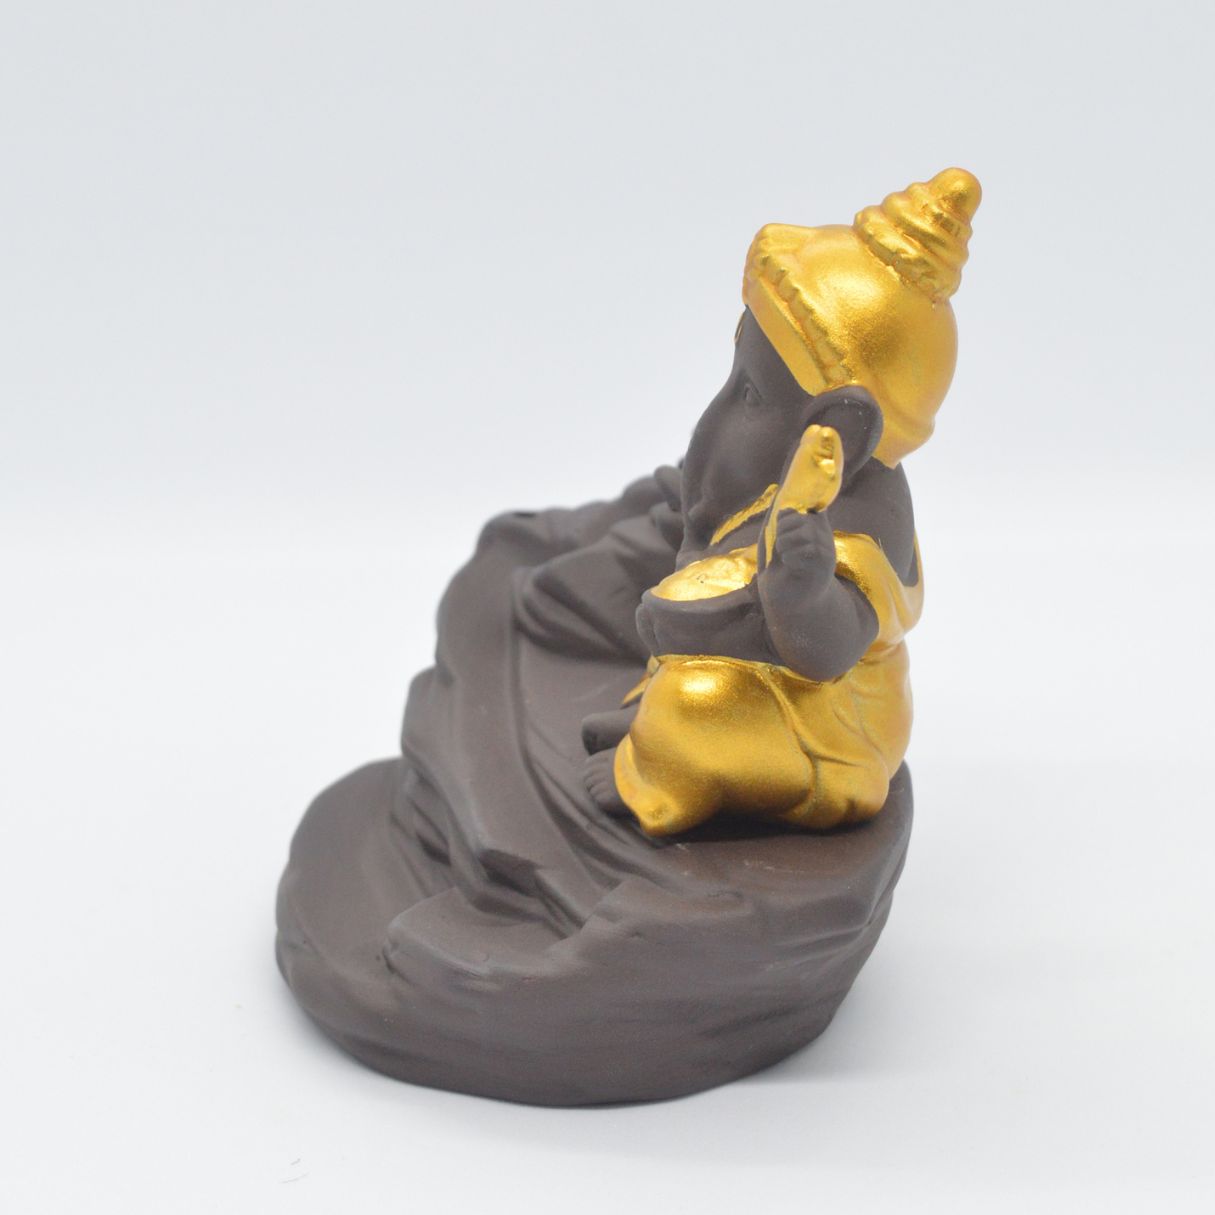 Gold Ganesha Ceramic Elephant God